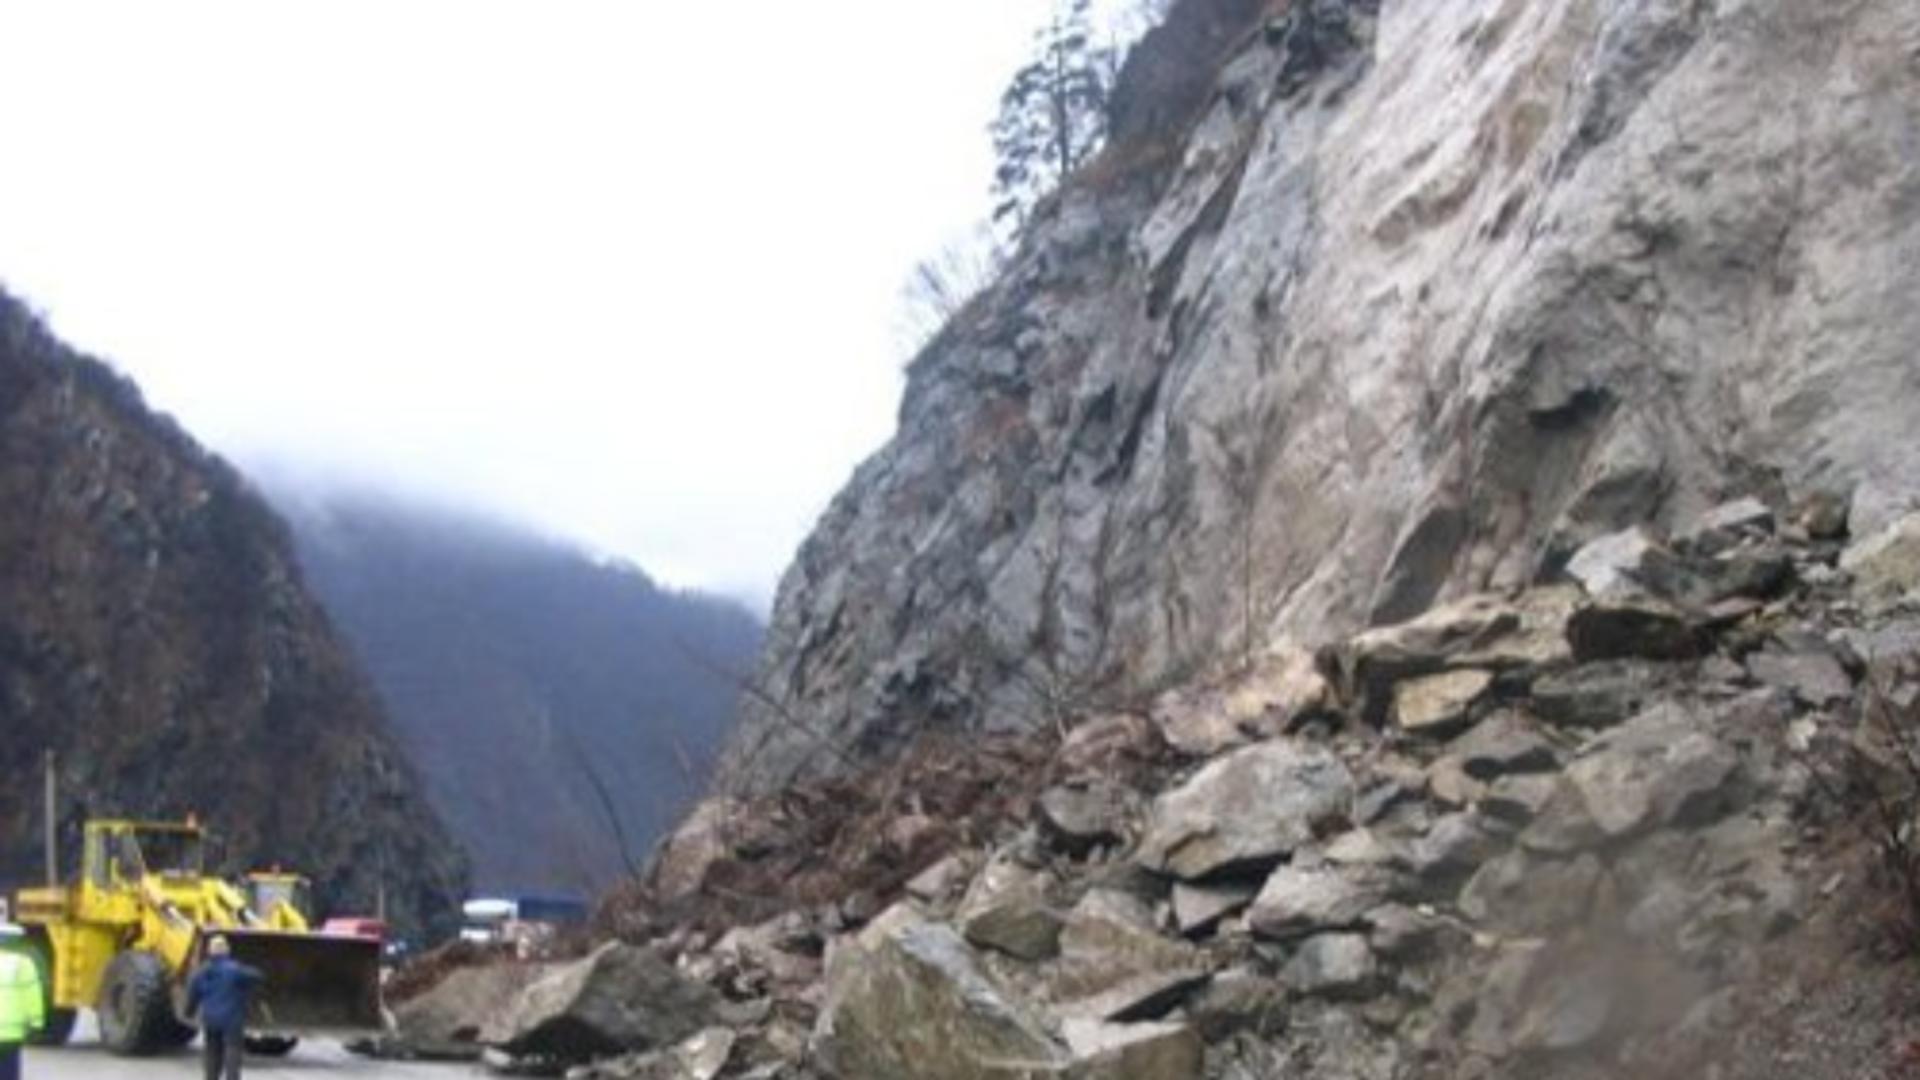 Alertă: Drum național blocat total după căderea de stînci și pietre între județele Mehedinți și Caraș-Severin - FOTO 